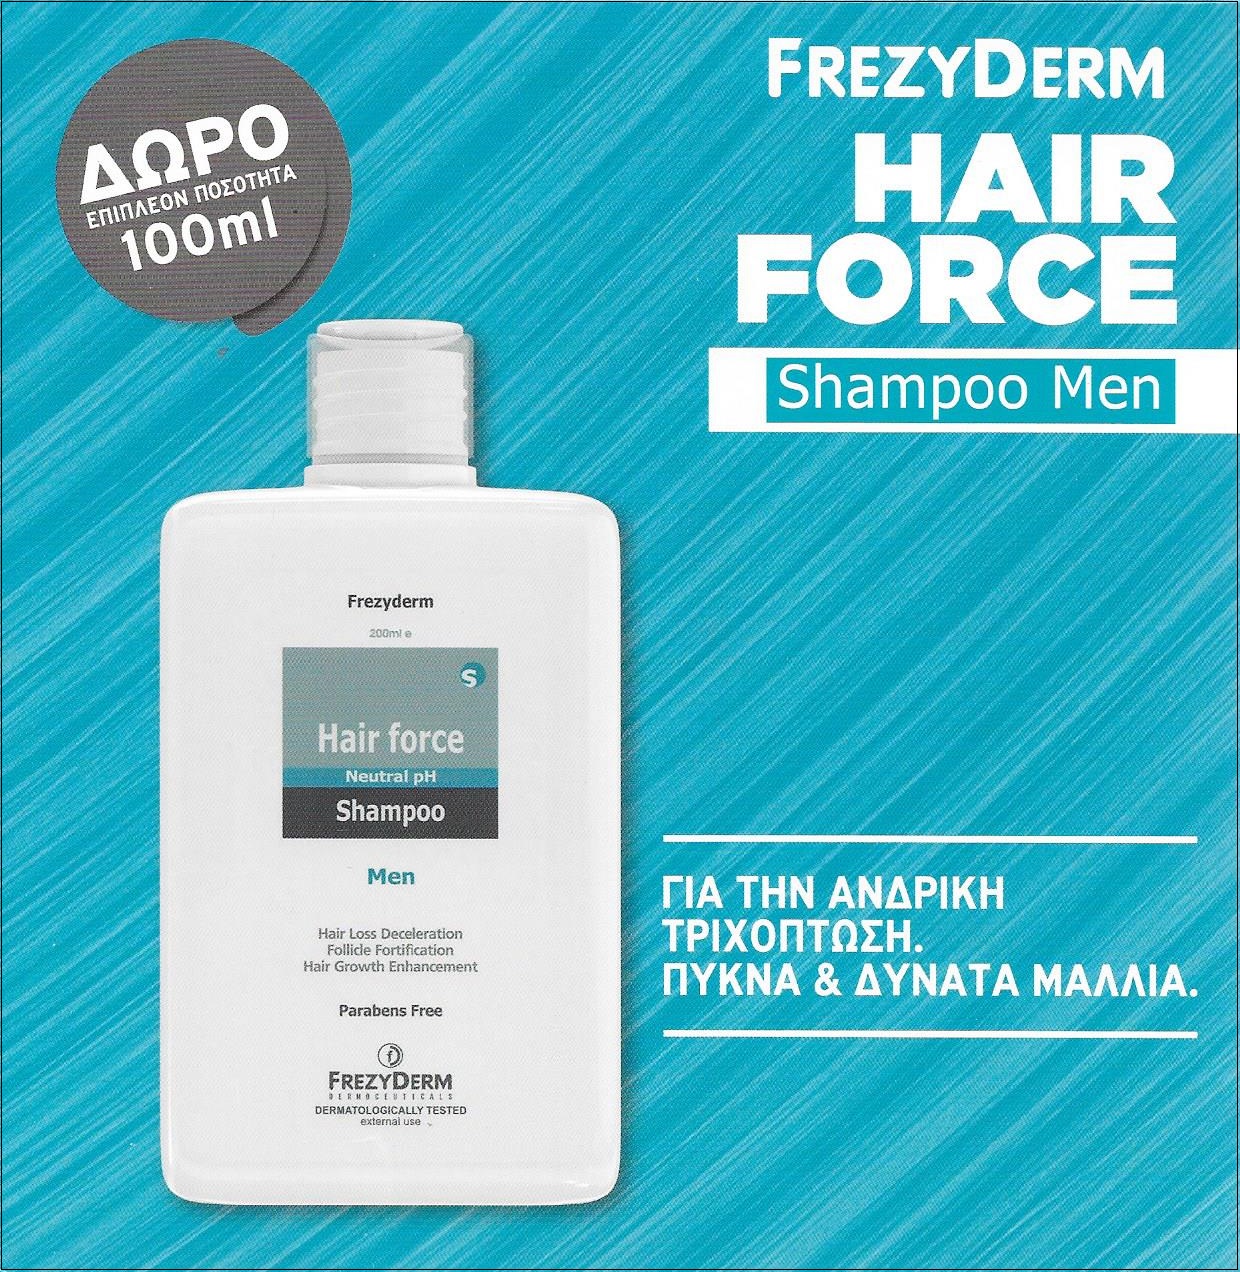 FREZYDERM Hair Force Shampoo Men 200ml + ΔΩΡΟ Επιπλέον Ποσότητα 100ml